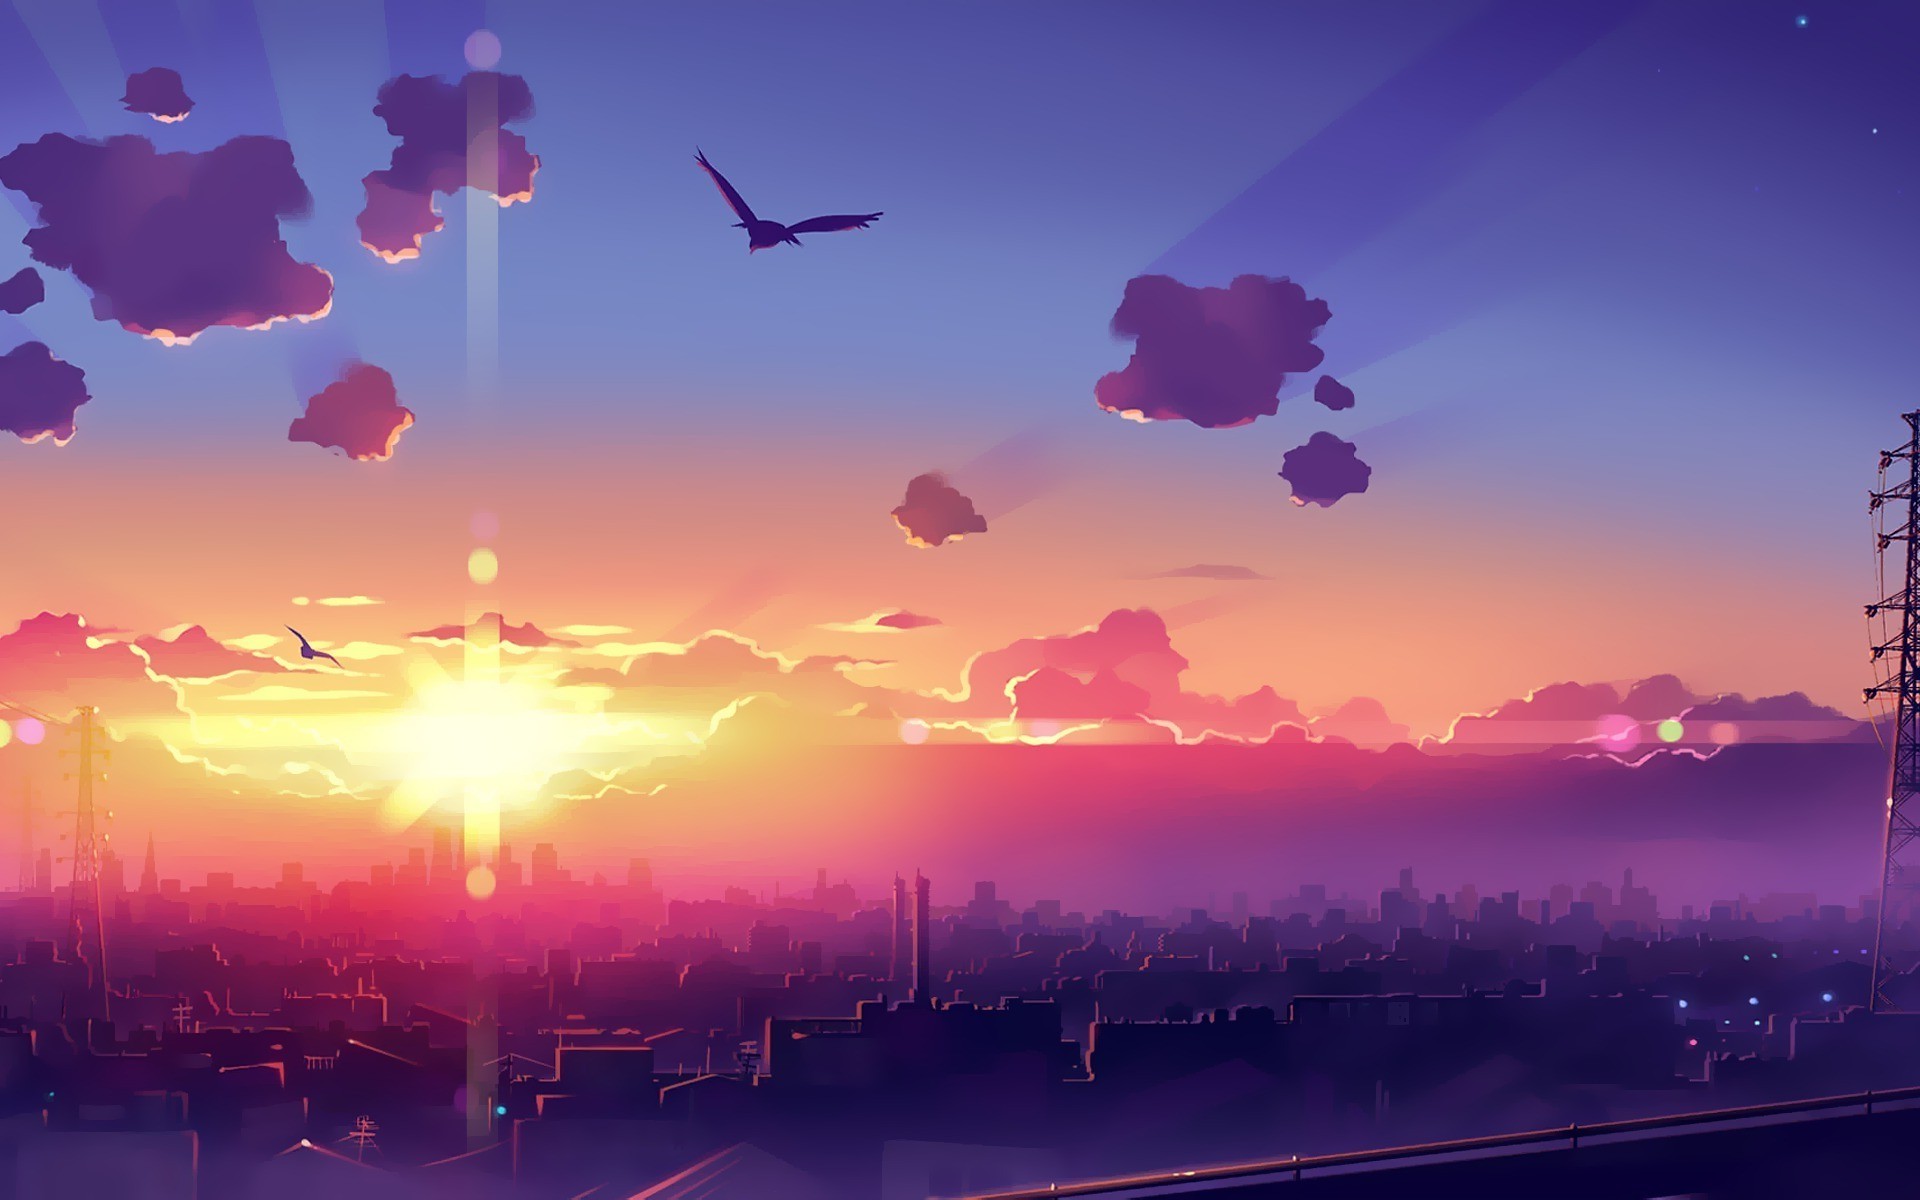 Artwork Fantasy Art Anime City Sunset Sky Wallpapers Sunset